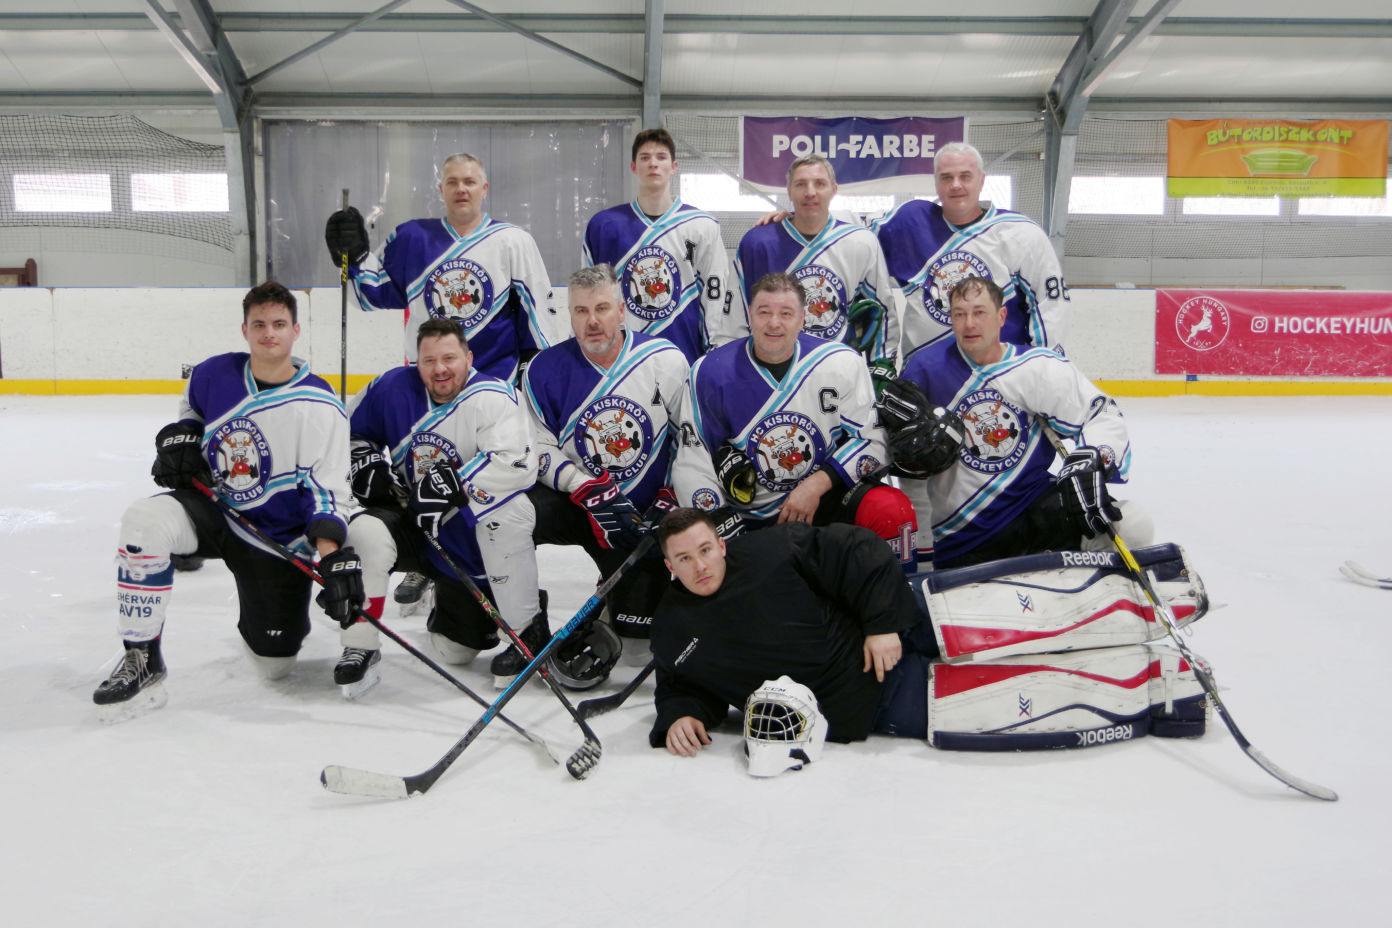 Tíz csapat mérte össze erejét a Classic Winter Jégkorong Tornán